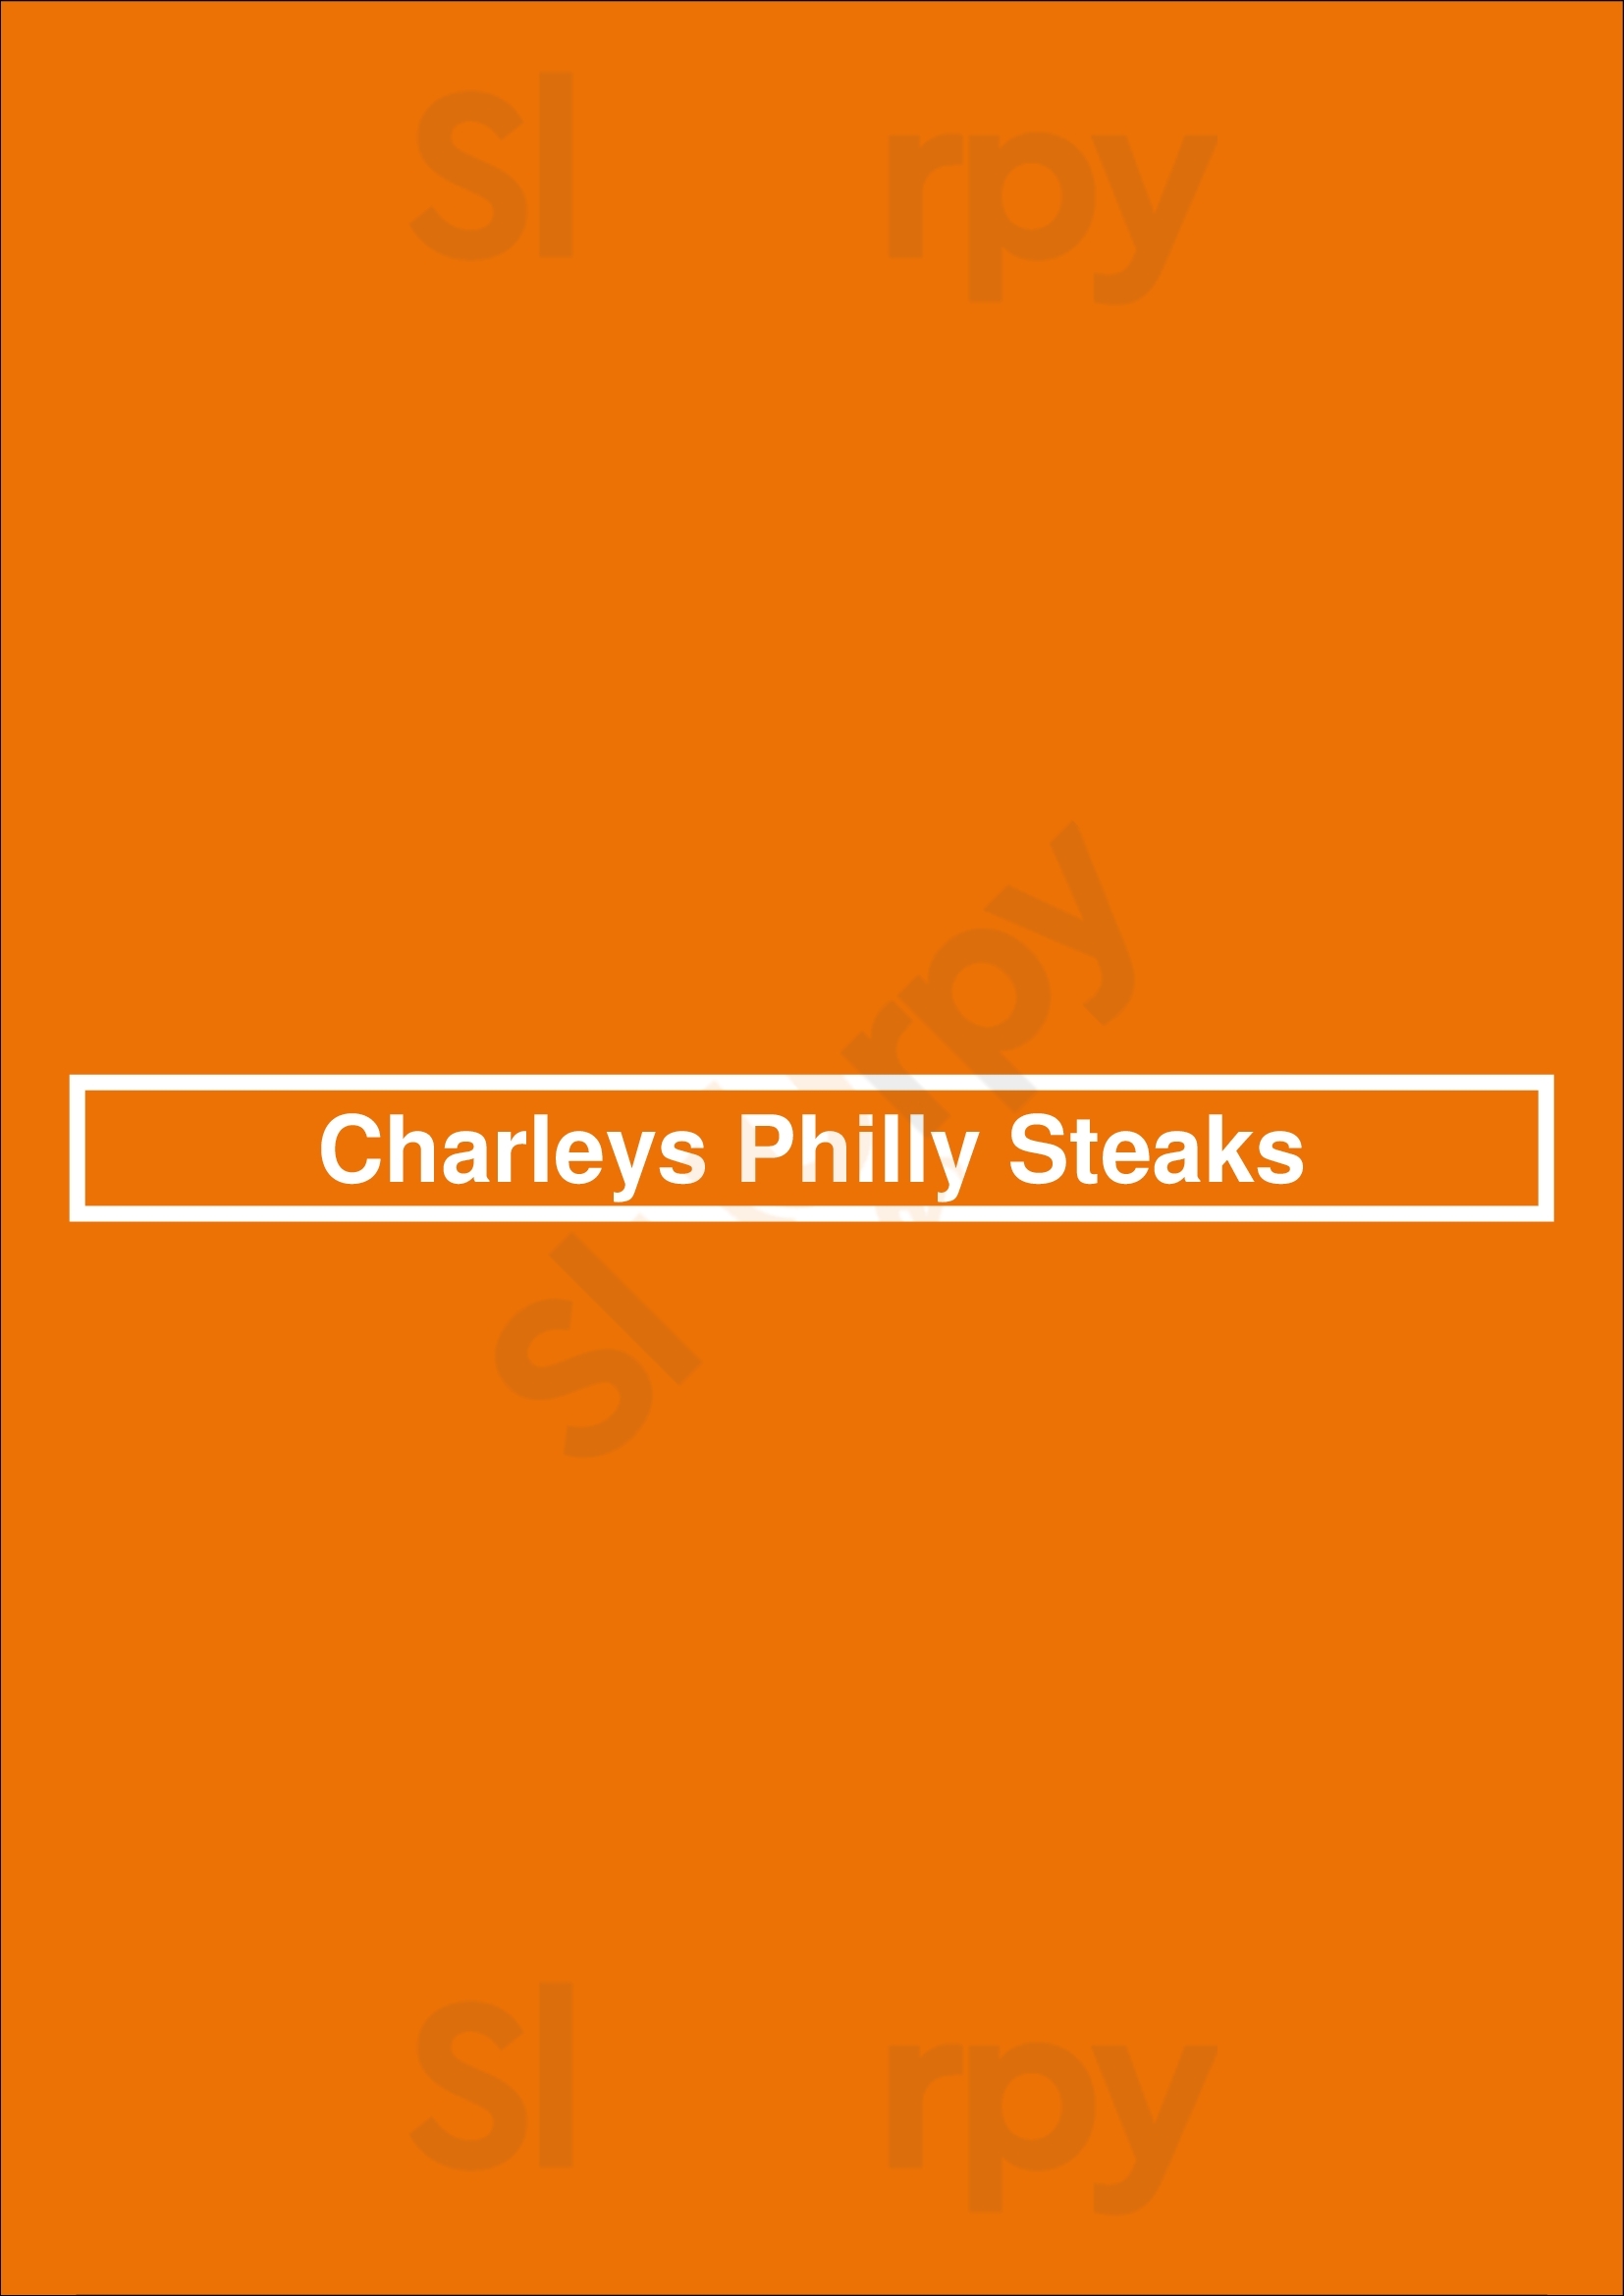 Charleys Philly Steaks San Antonio Menu - 1